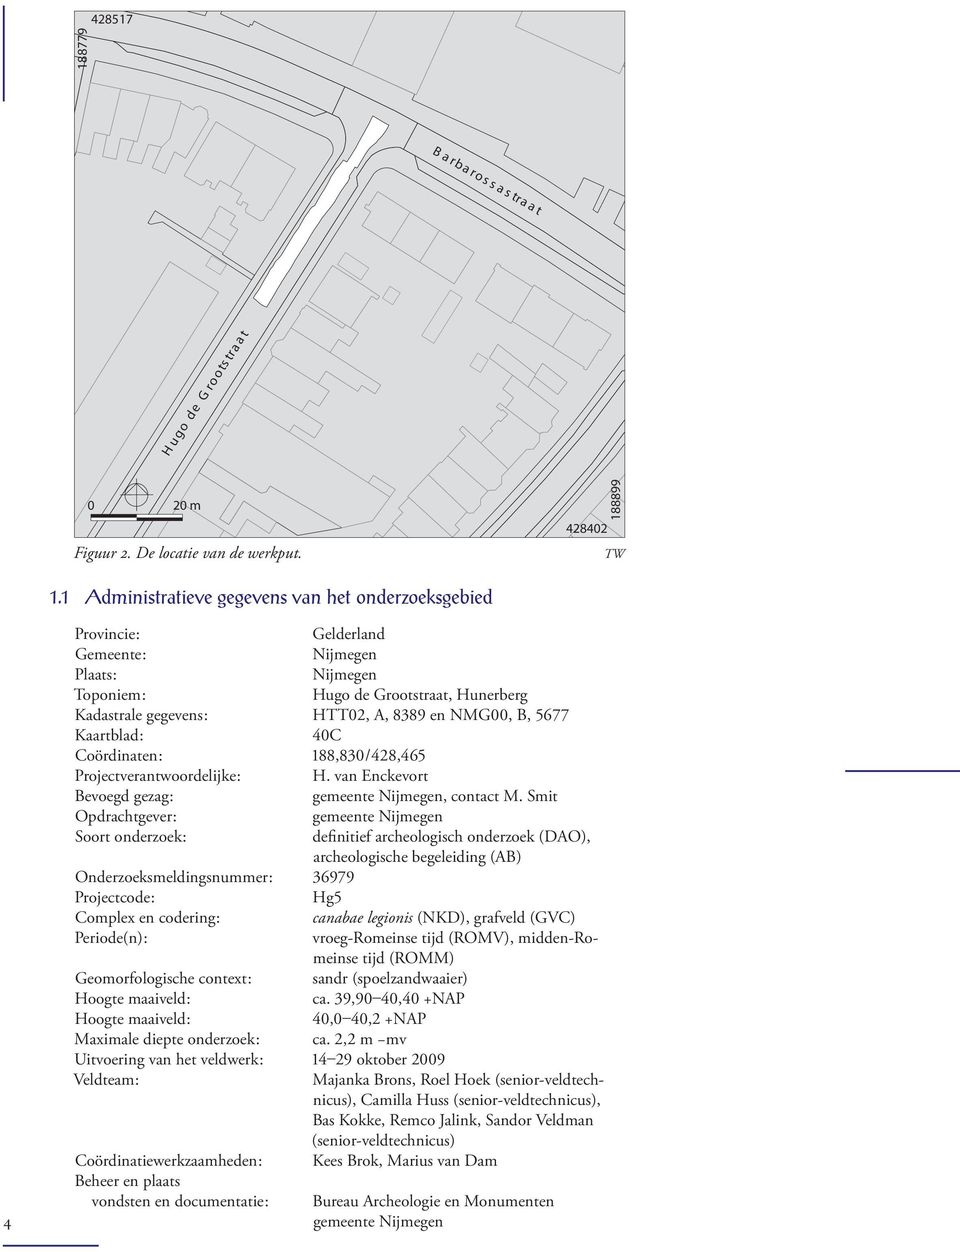 NMG00, B, 5677 Kaartblad : 40C Coördinaten : 188,830 / 428,465 Projectverantwoordelijke : H. van Enckevort Bevoegd gezag : gemeente Nijmegen, contact M.